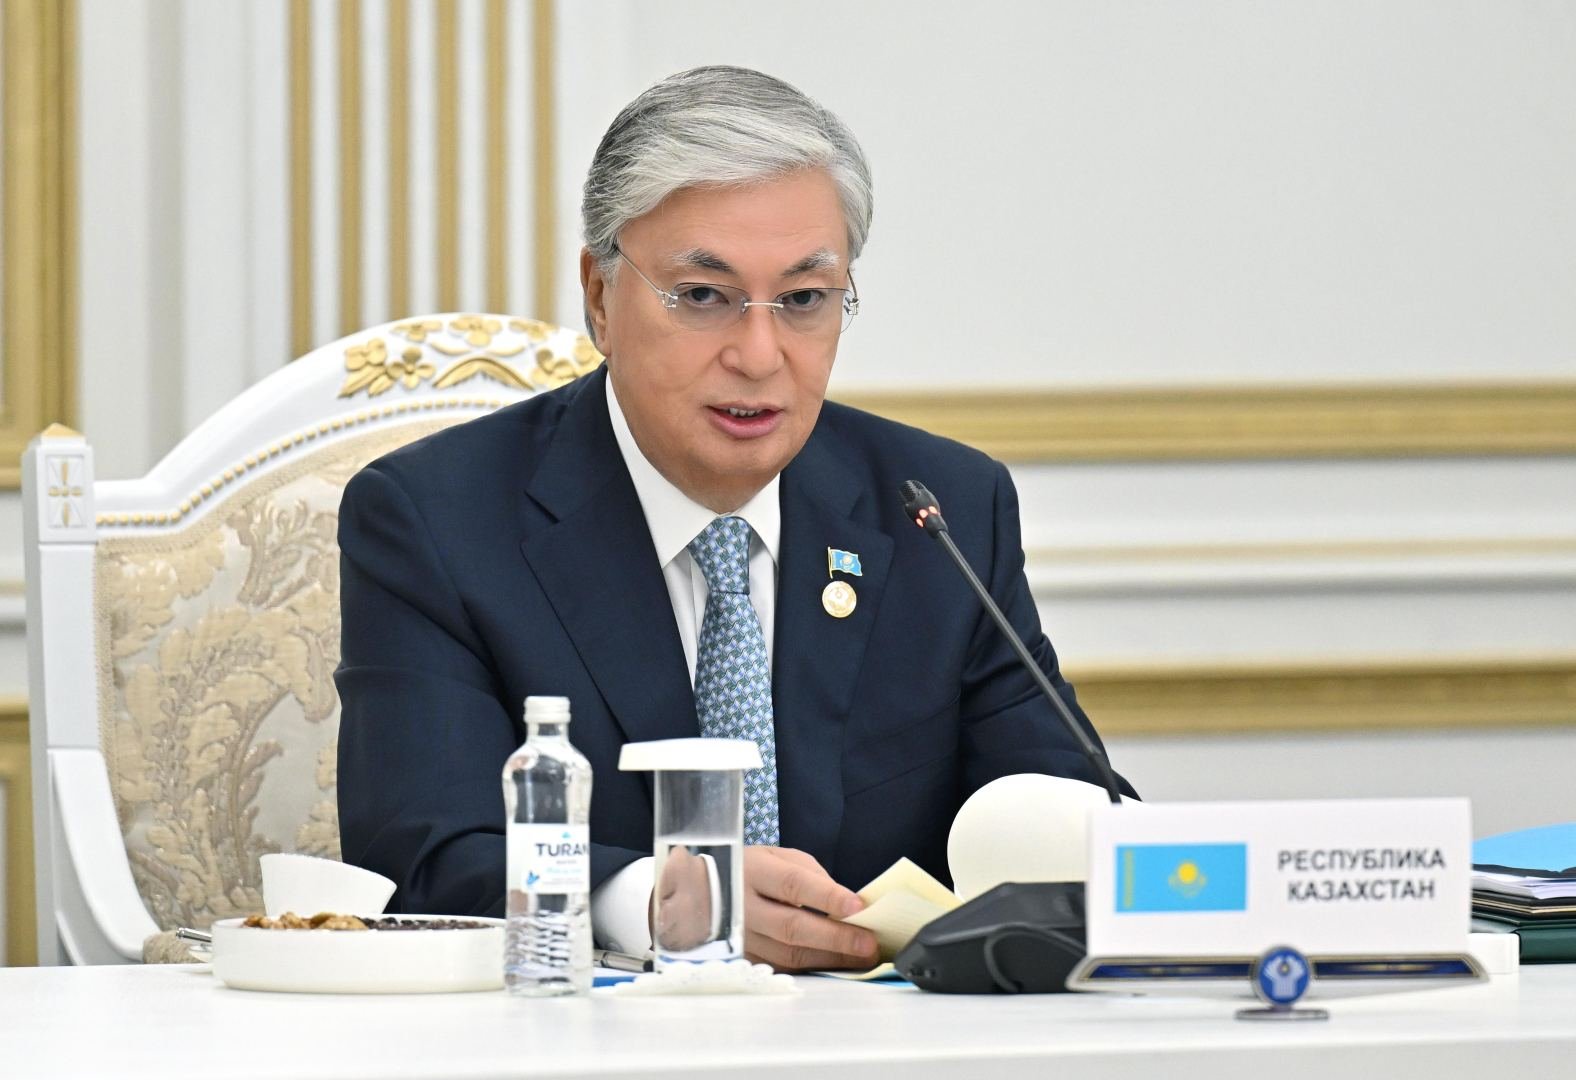 Казахстан начал переход к новой экономической модели - Касым-Жомарт Токаев